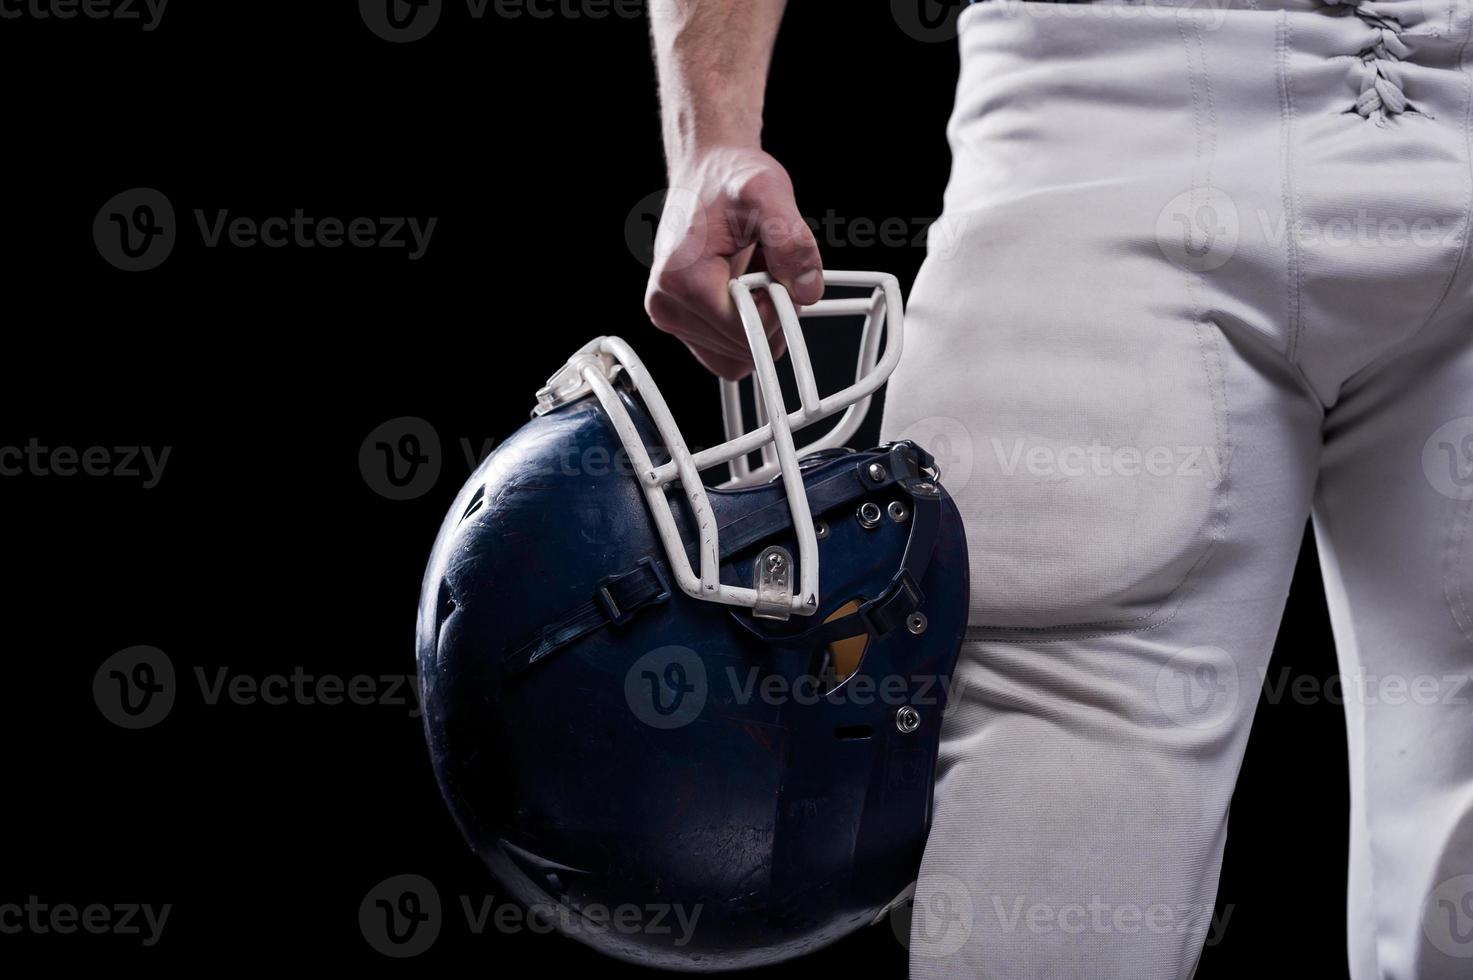 Botsing helm. bijgesneden beeld van Amerikaans Amerikaans voetbal speler Holding Amerikaans voetbal helm terwijl staand tegen zwart achtergrond foto